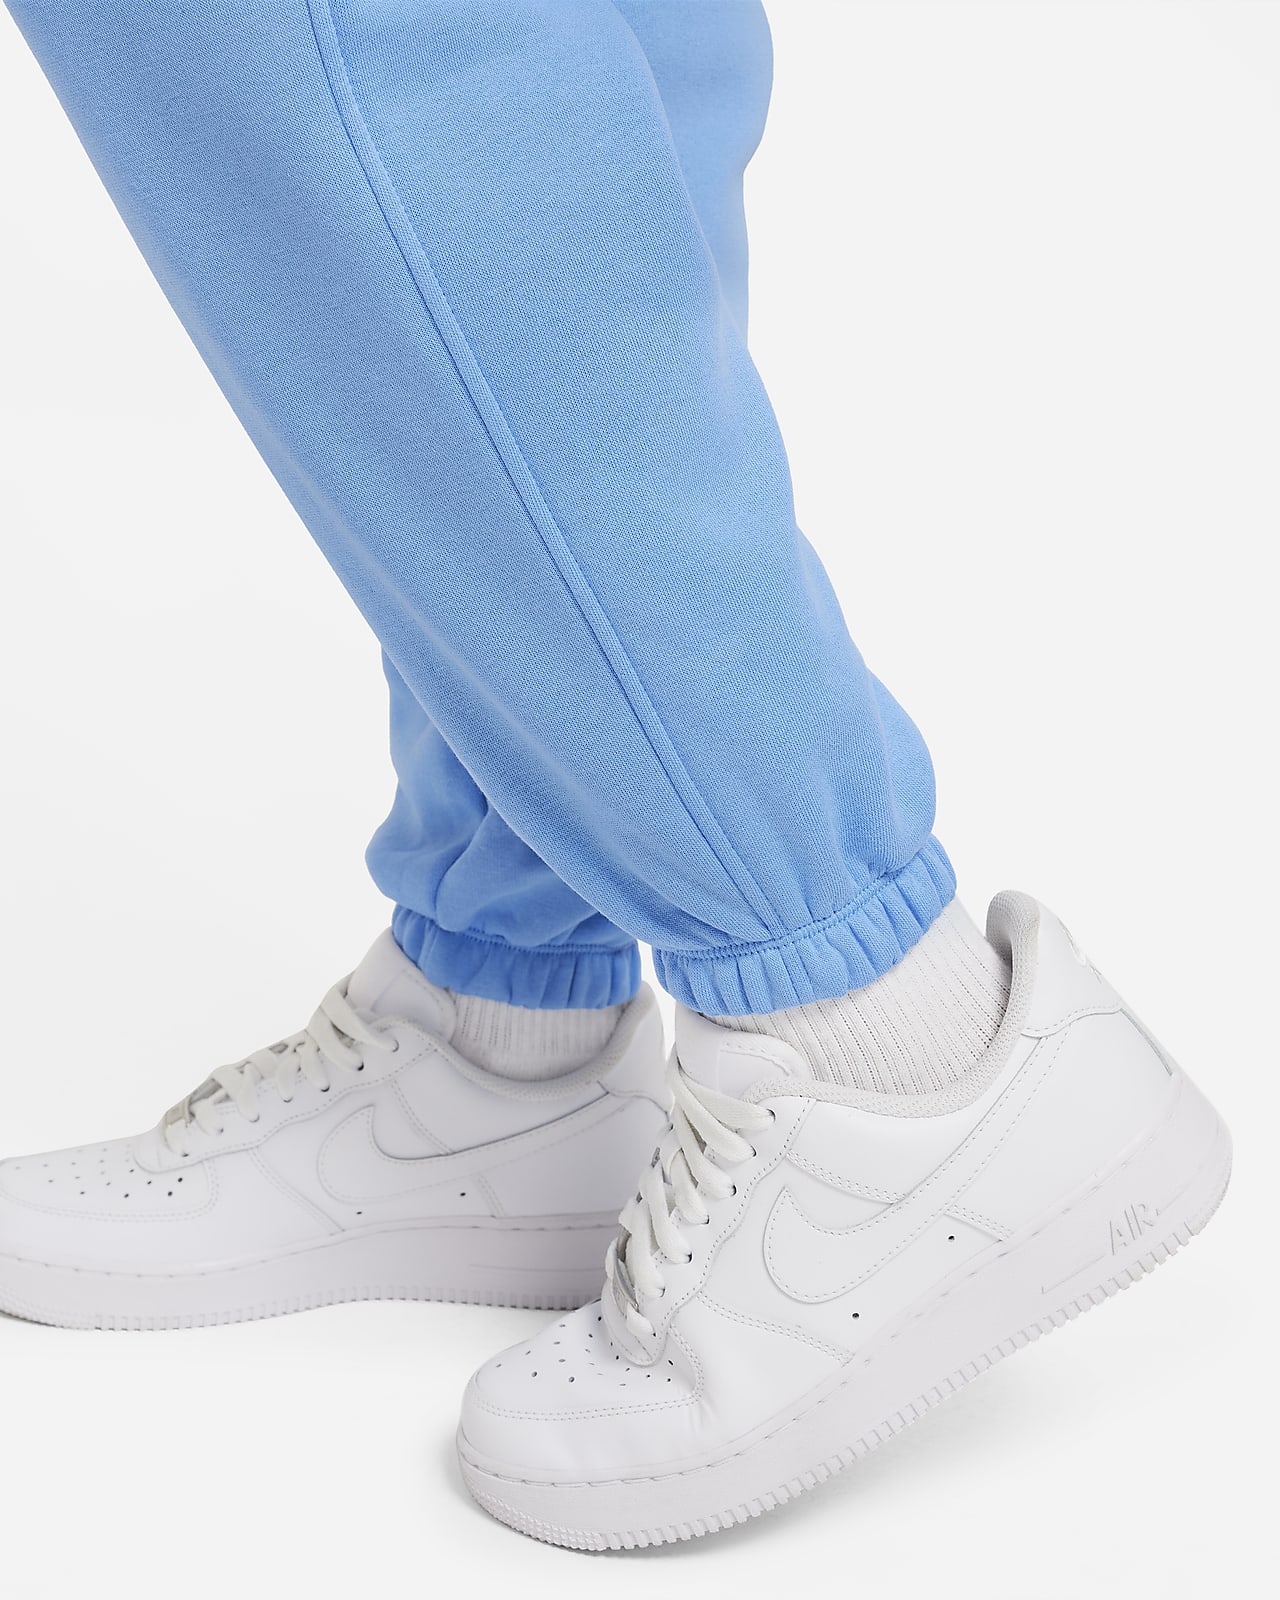  Nike Girl's Sportswear Club Fleece Pants (Little Kids